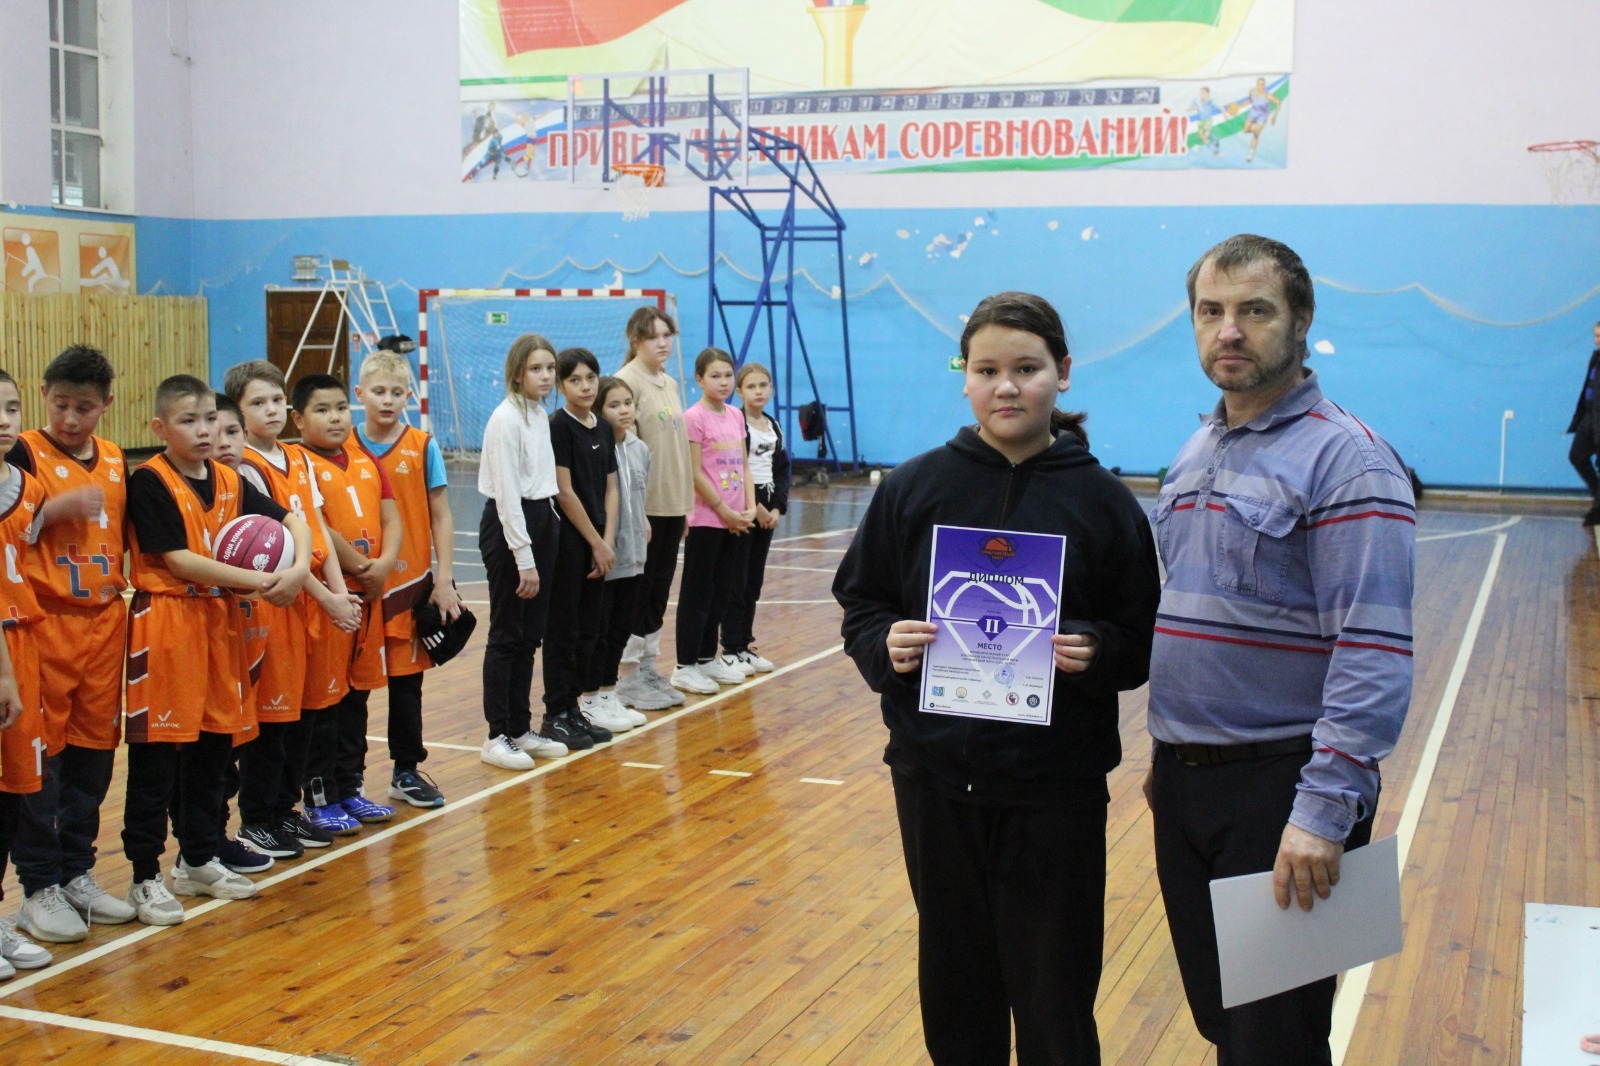 В селе Ермолаево Куюргазинского района Башкирии прошел муниципальный этап Всероссийского баскетбольного проекта  «Оранжевый мяч».